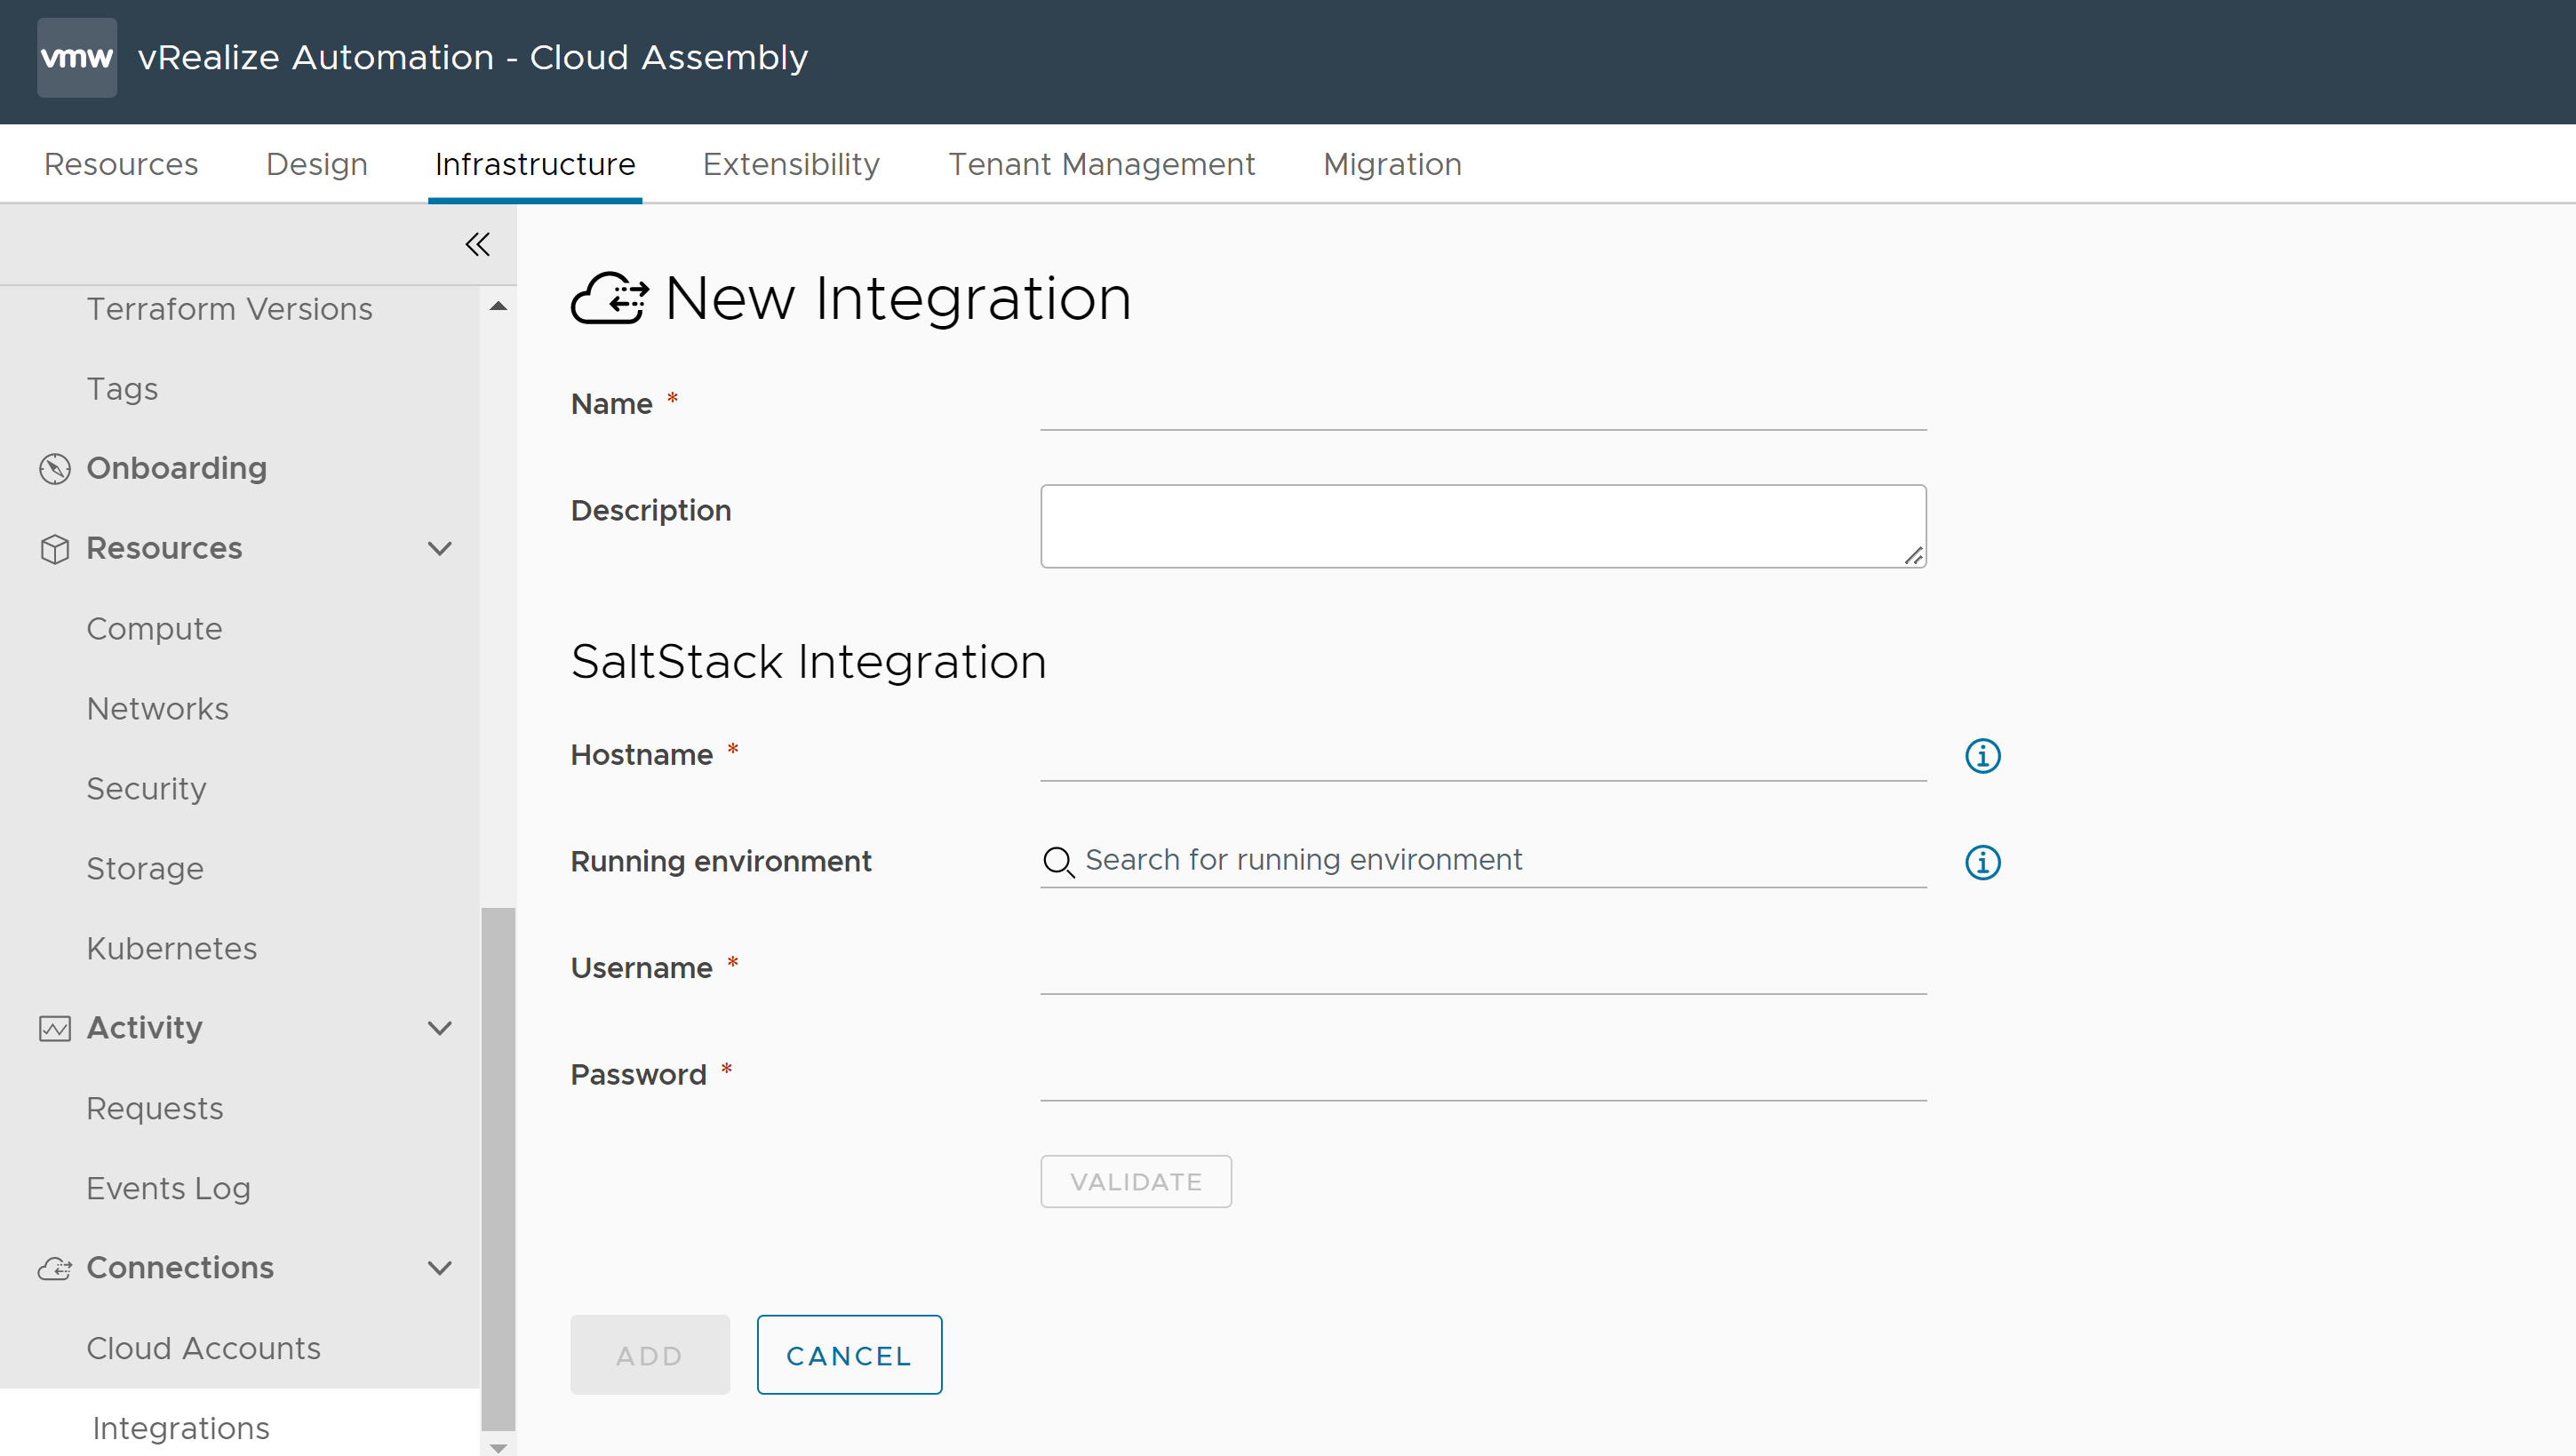 Modulo per la creazione di una nuova integrazione in Cloud Assembly